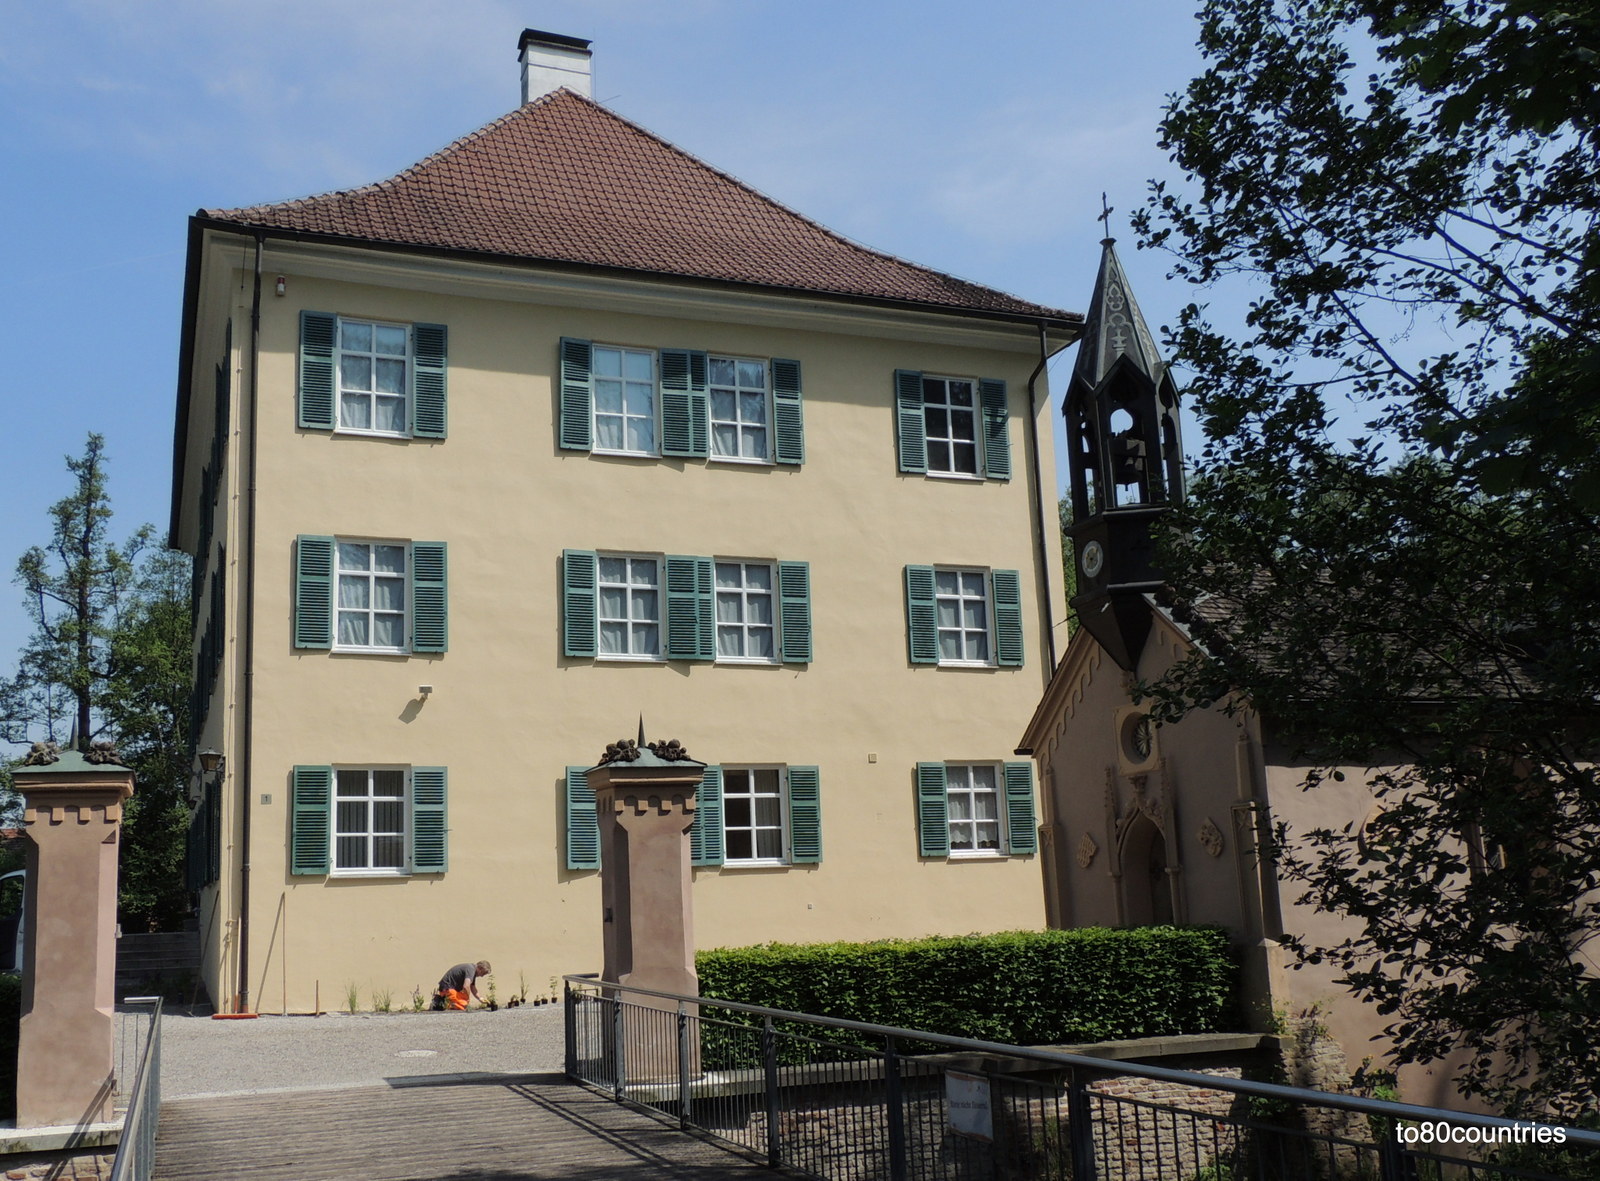 Ehemaliges Wittelsbacher Jagdschloss von Herzog Max in Bayern